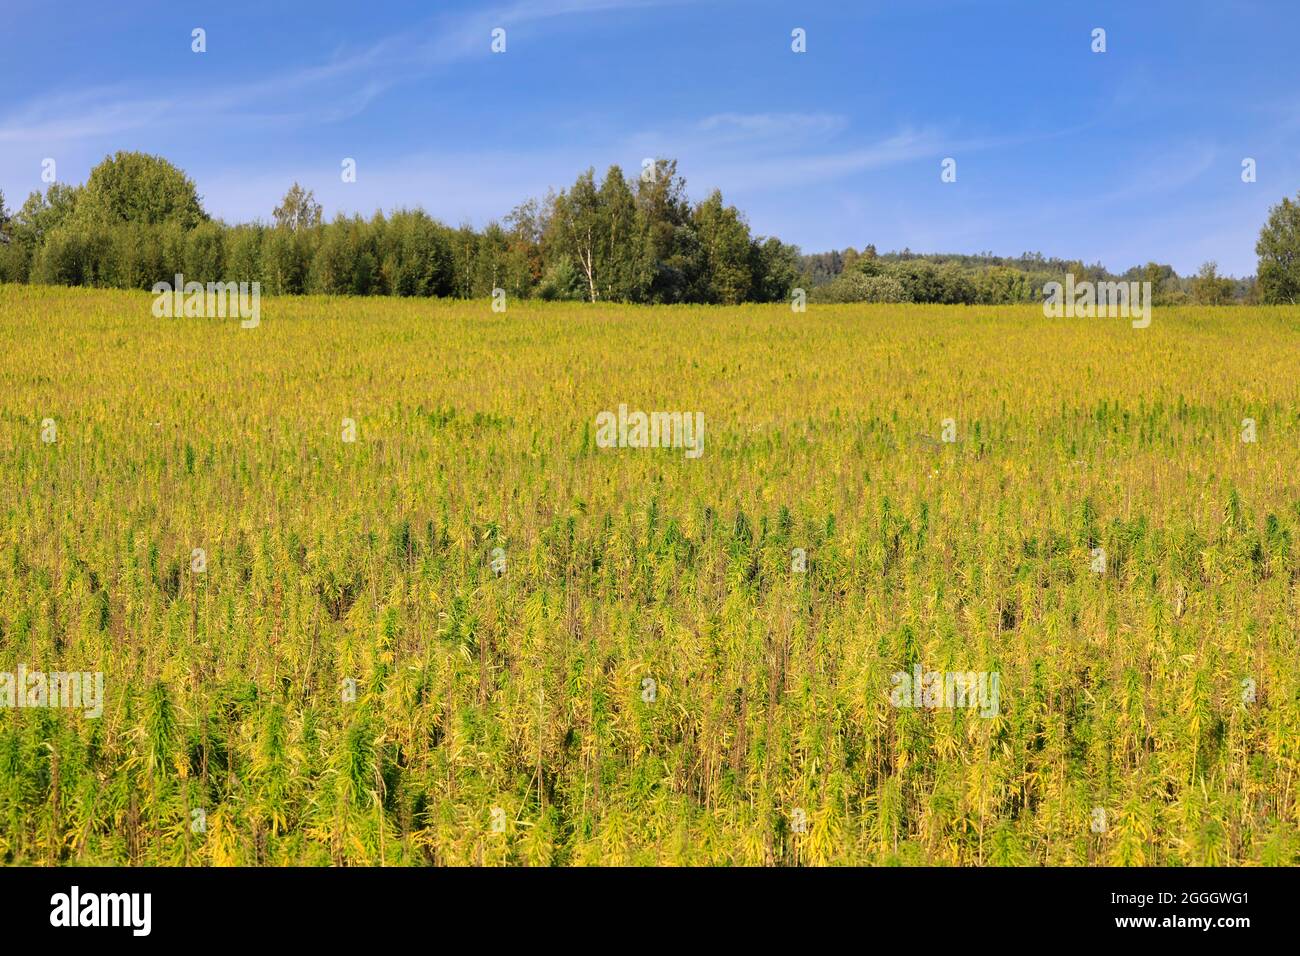 Chanvre industriel, Cannabis sativa, de la variété Finola, cultivé en Finlande en août. Le chanvre agricole à faible teneur en THC est utilisé pour produire de l'huile de graines de chanvre. Banque D'Images